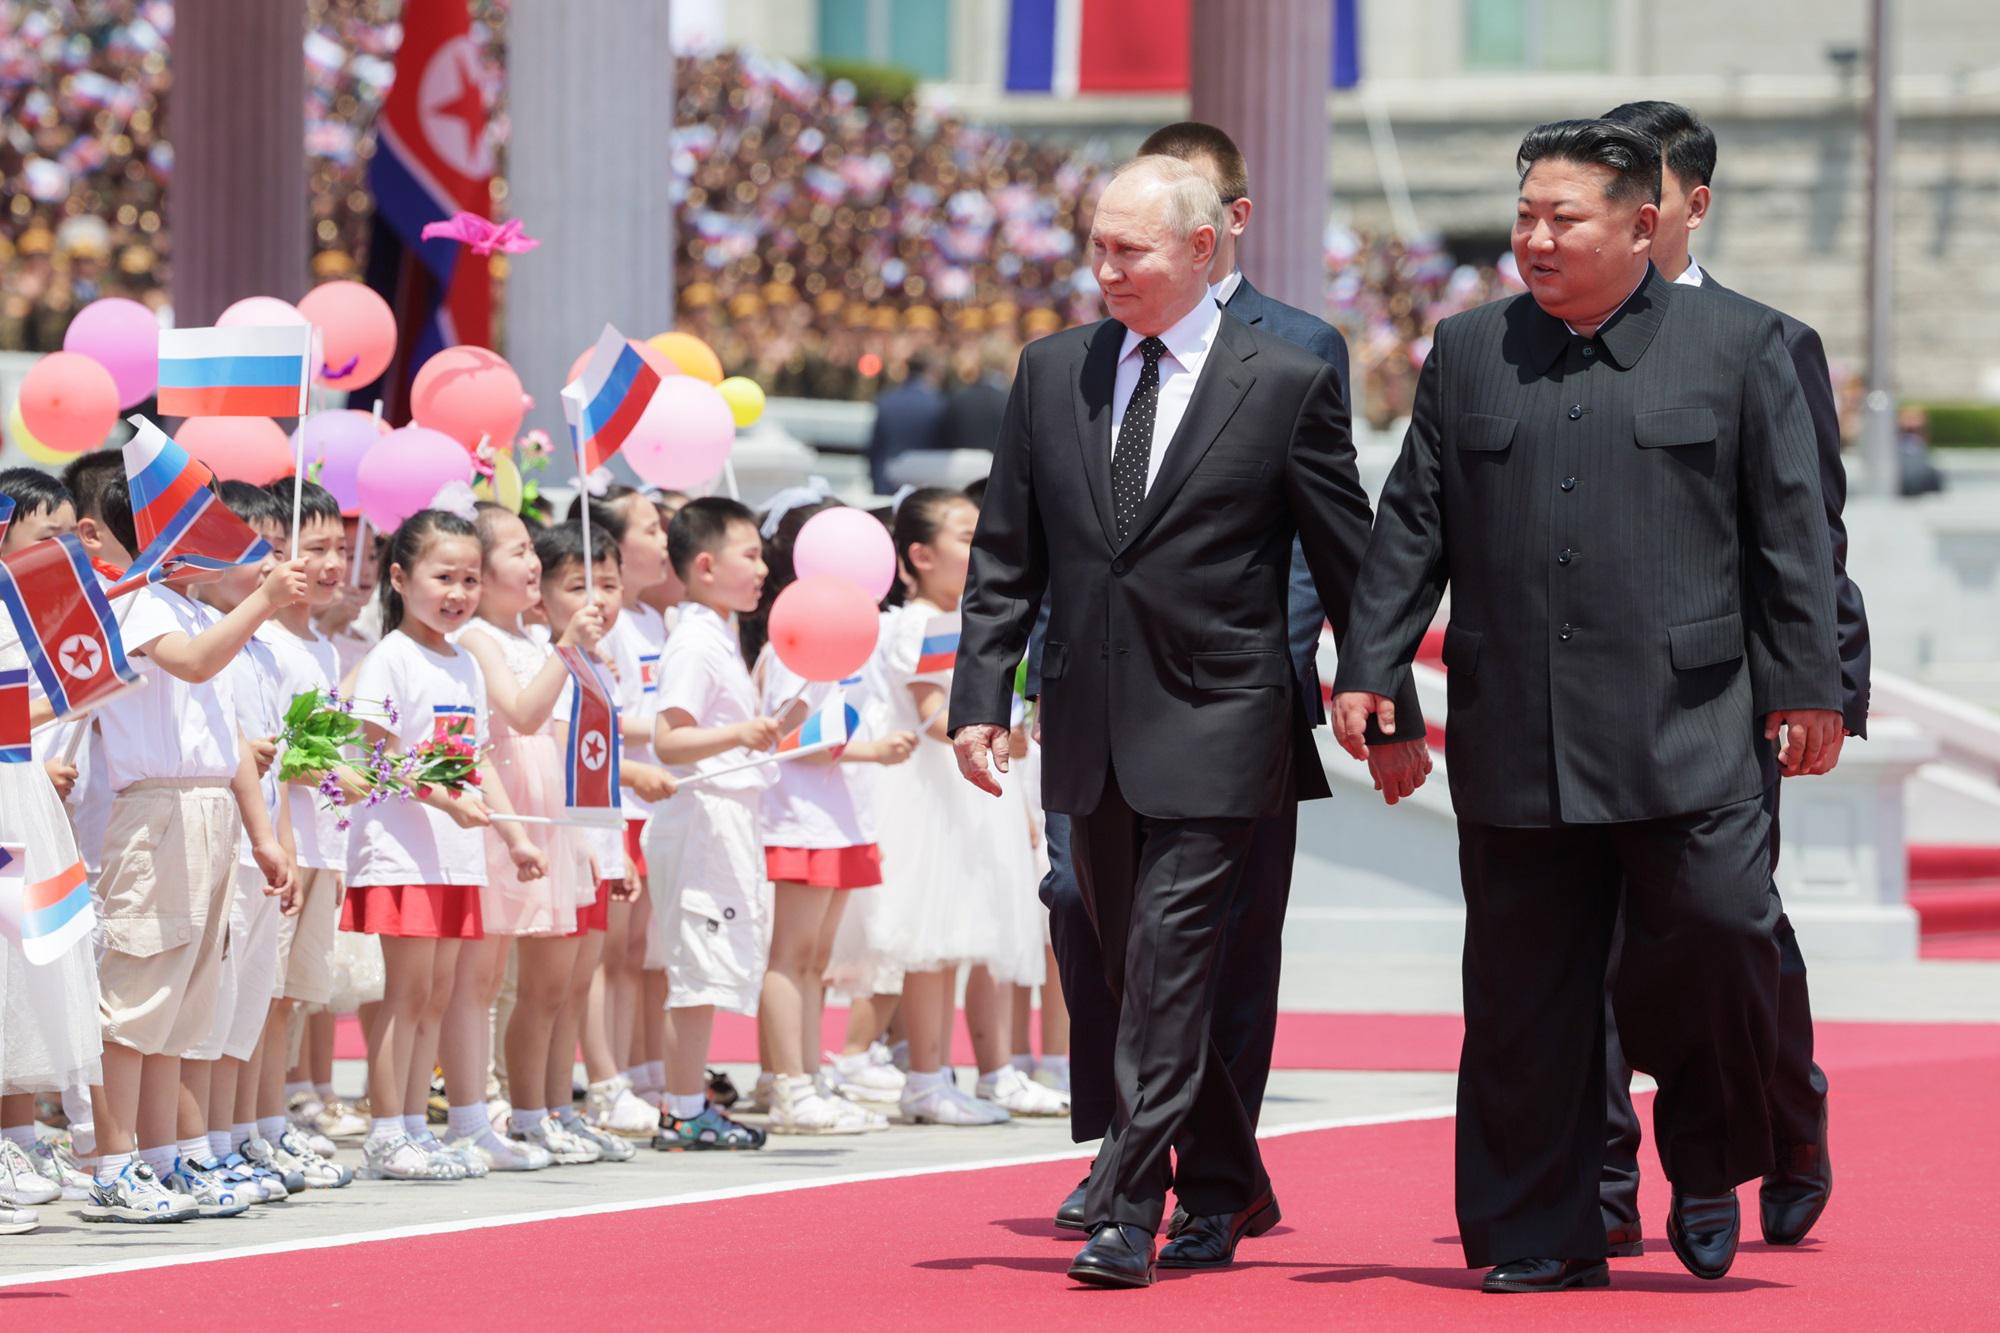 Fiori - bimbi e palloncini: la festa di Kim per Putin come un vecchio film sovietico